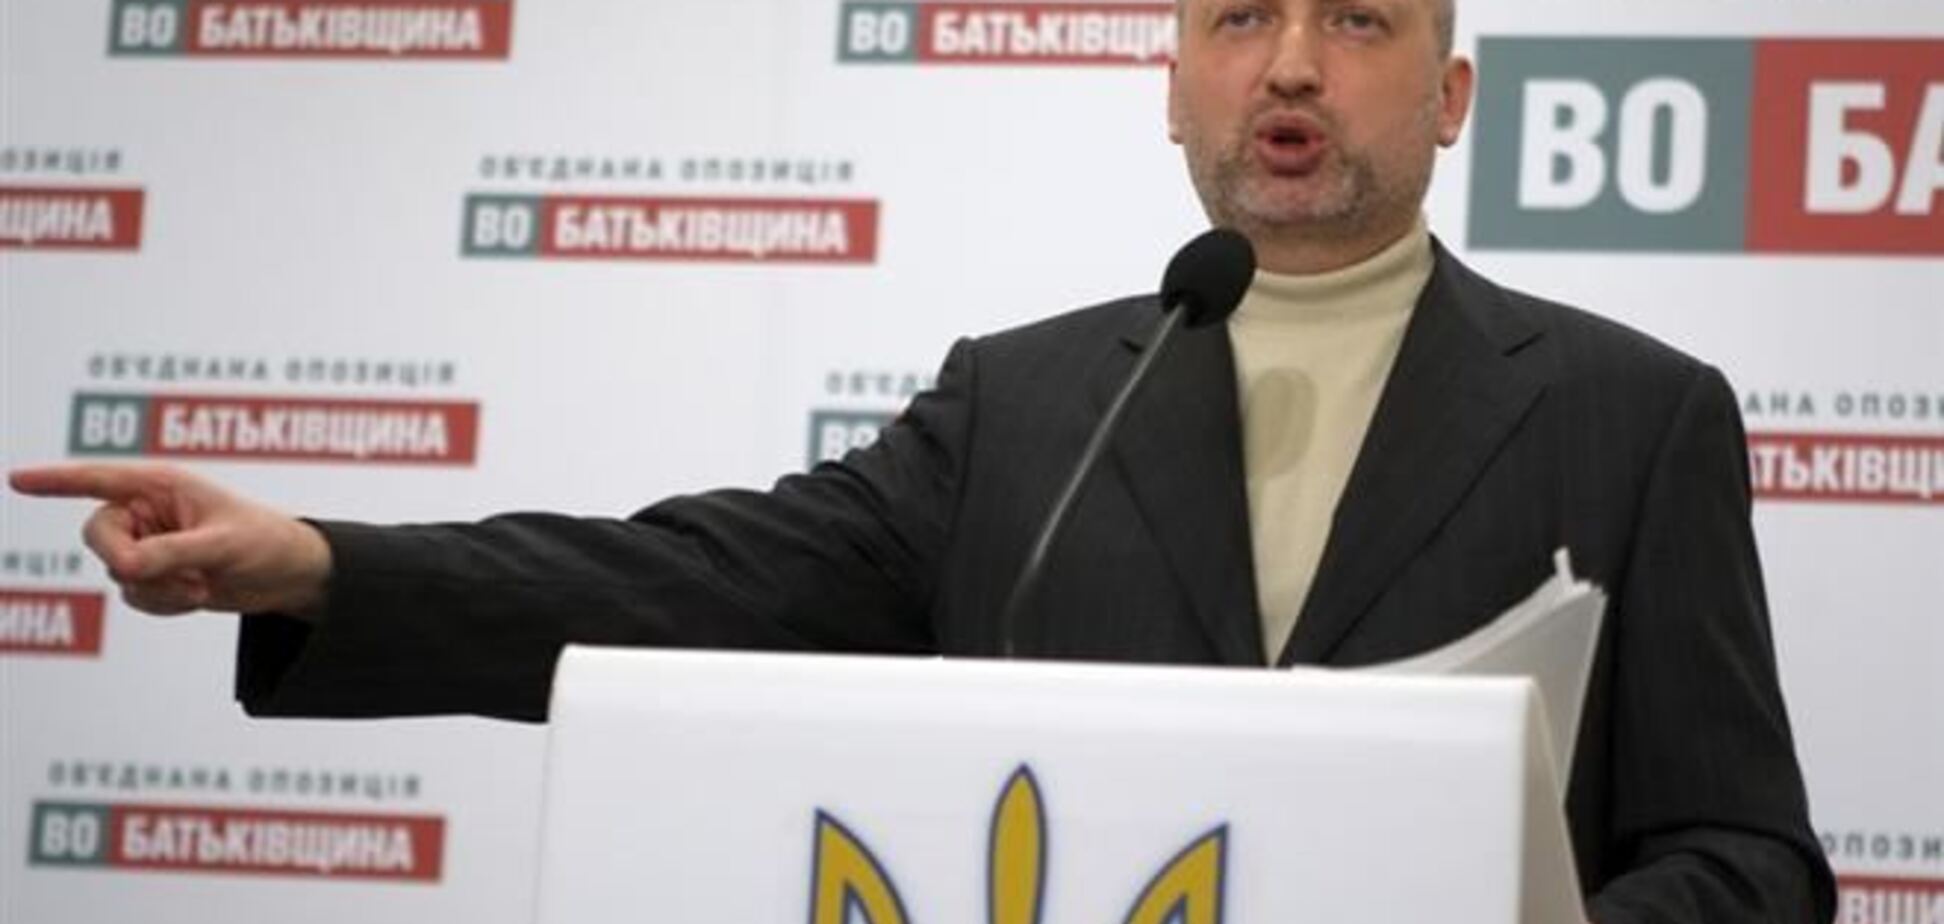 ВР ініціюватиме розпуск парламенту АР Крим - Турчинов